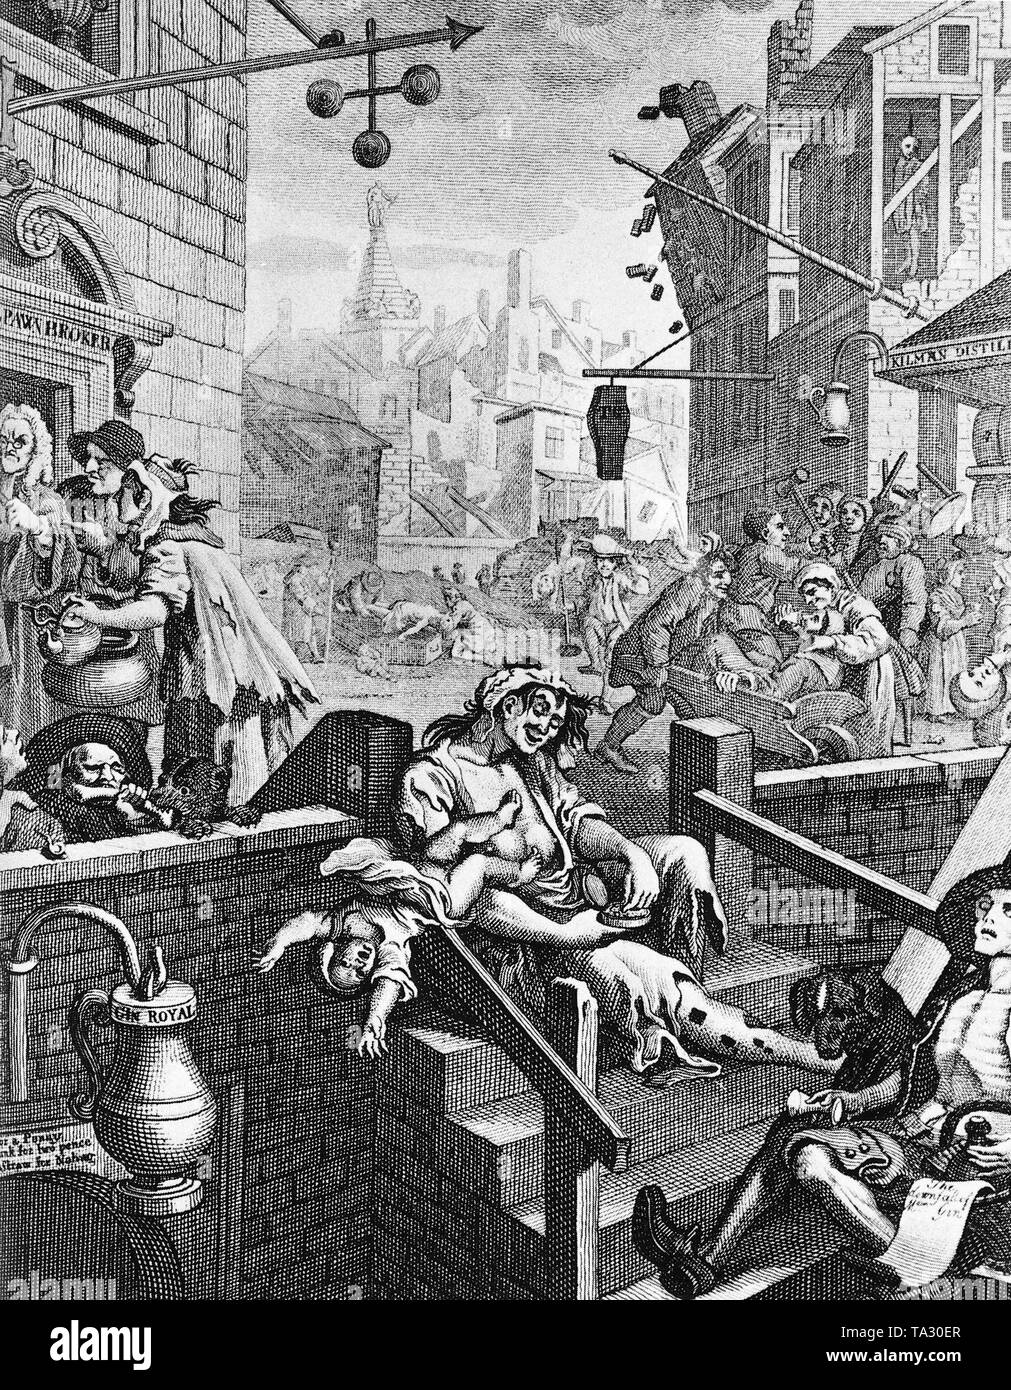 La gravure 'Gin Lane' (1751) de William Hogarth (1697-1764) dépeint la misère à Londres au 18e siècle. Hogarth dessine une photo de Londres caractérisé par l'alcoolisme et la toxicomanie. La mère à l'avant-plan par exemple vous permet d'automne son bébé pendant qu'elle prend une pincée de tabac à priser. Banque D'Images